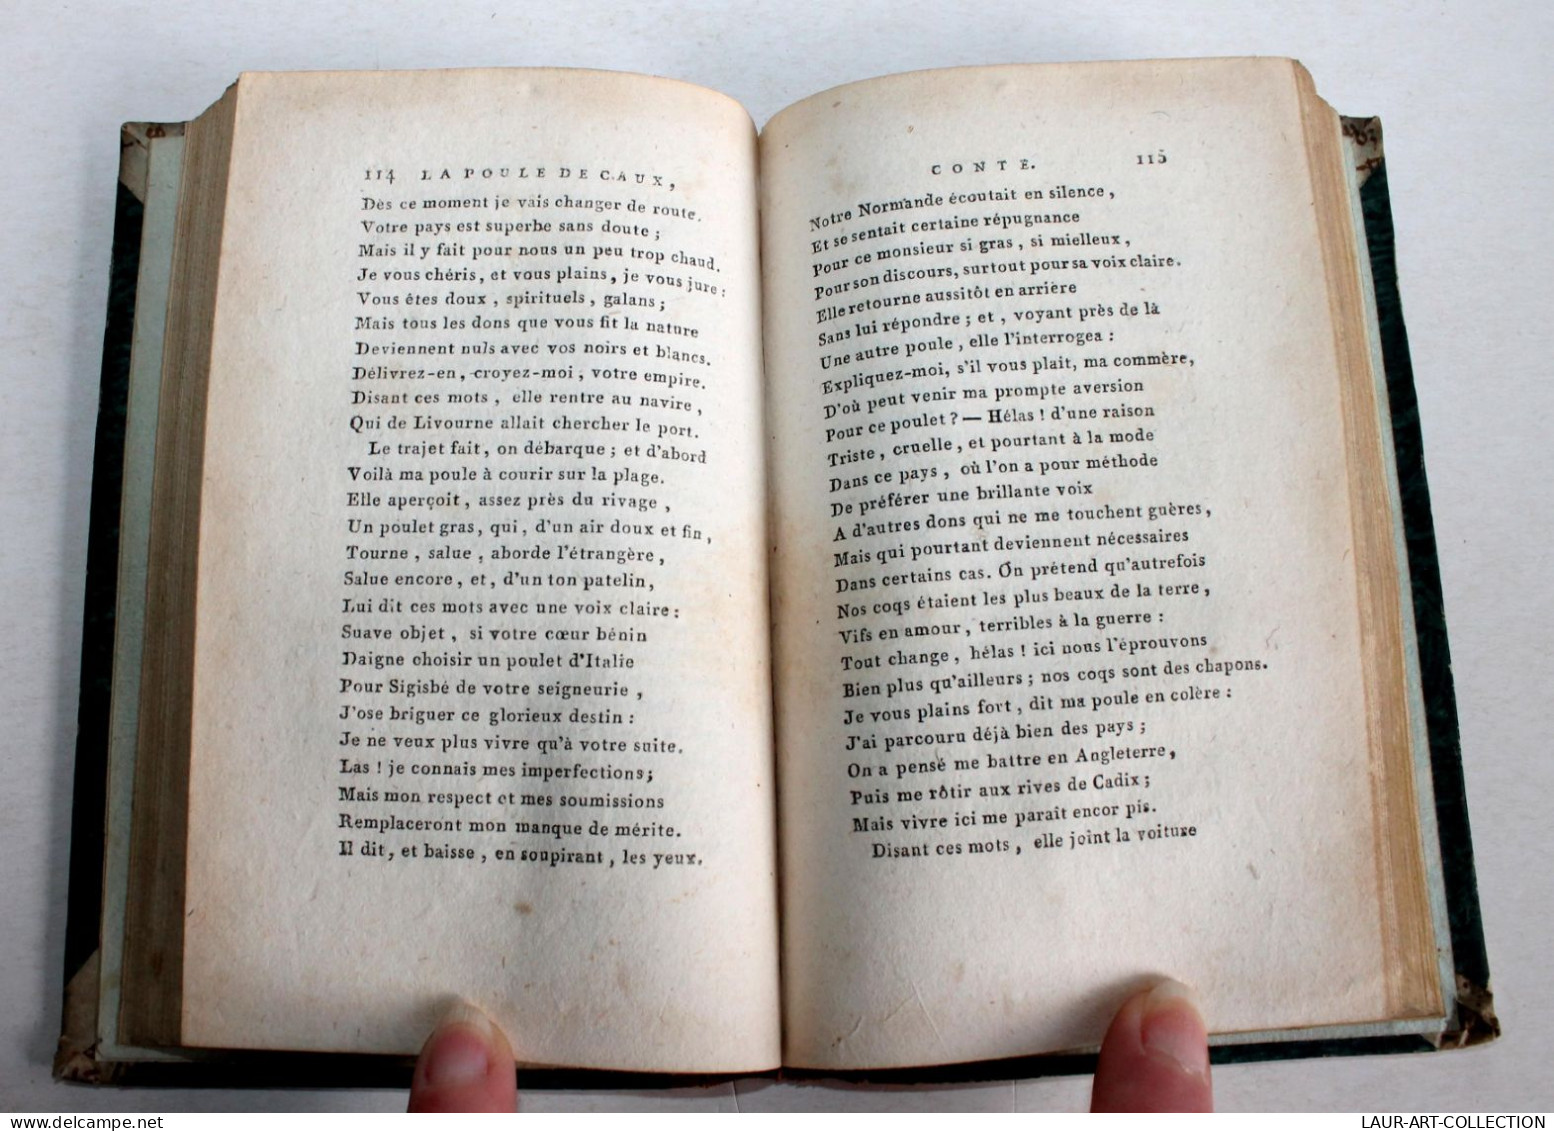 MELANGES DE POESIE ET DE LITTERATURE De DE FLORIAN + GRAVURES 1808 NICOLLE / ANCIEN LIVRE XIXe SIECLE (1803.32) - French Authors